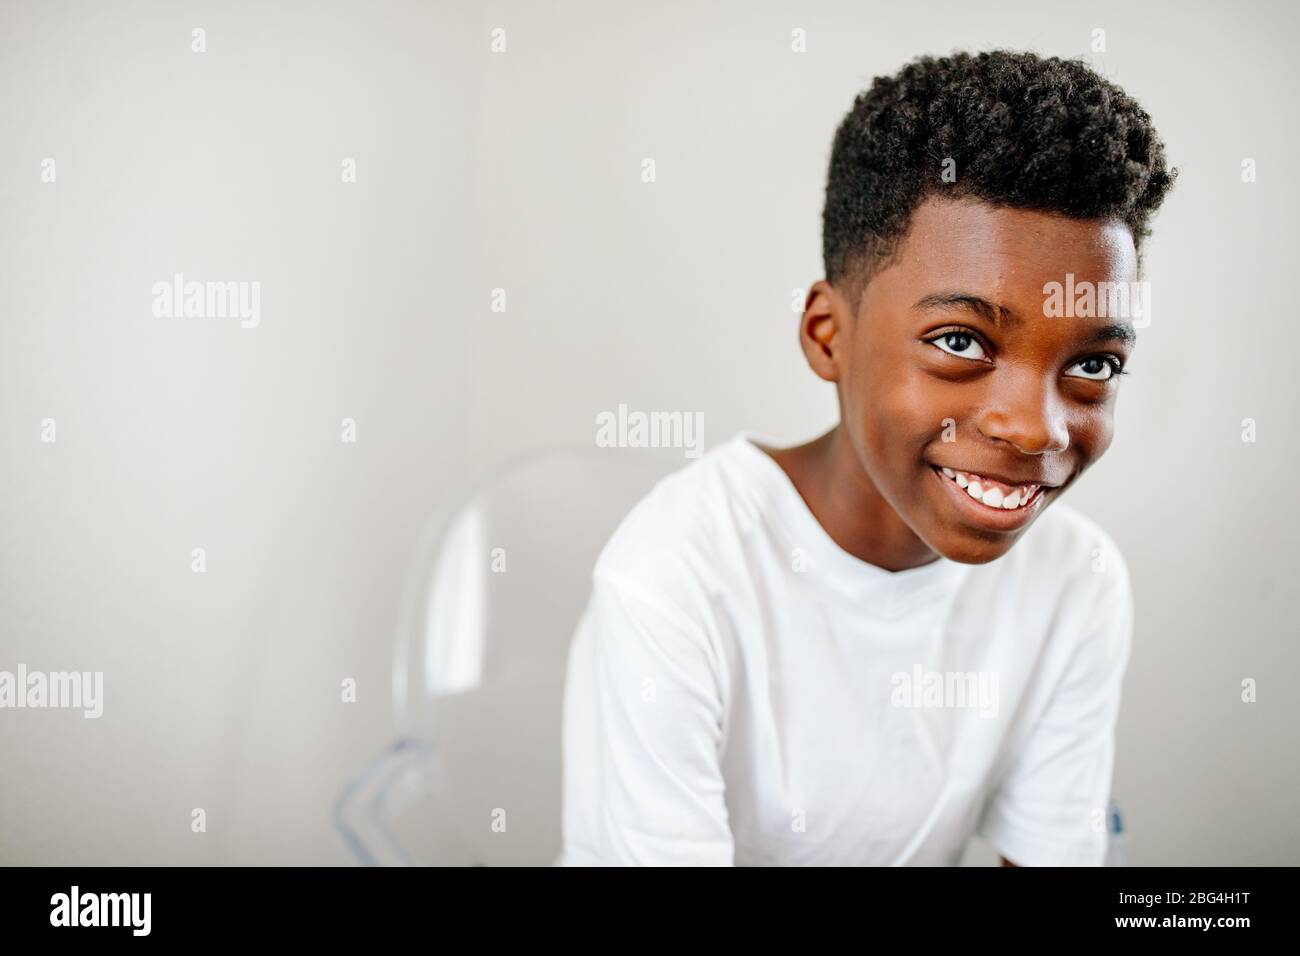 Jeune garçon noir souriant avec de grands yeux bruns chaise en acrylique clair regardant vers le haut Banque D'Images